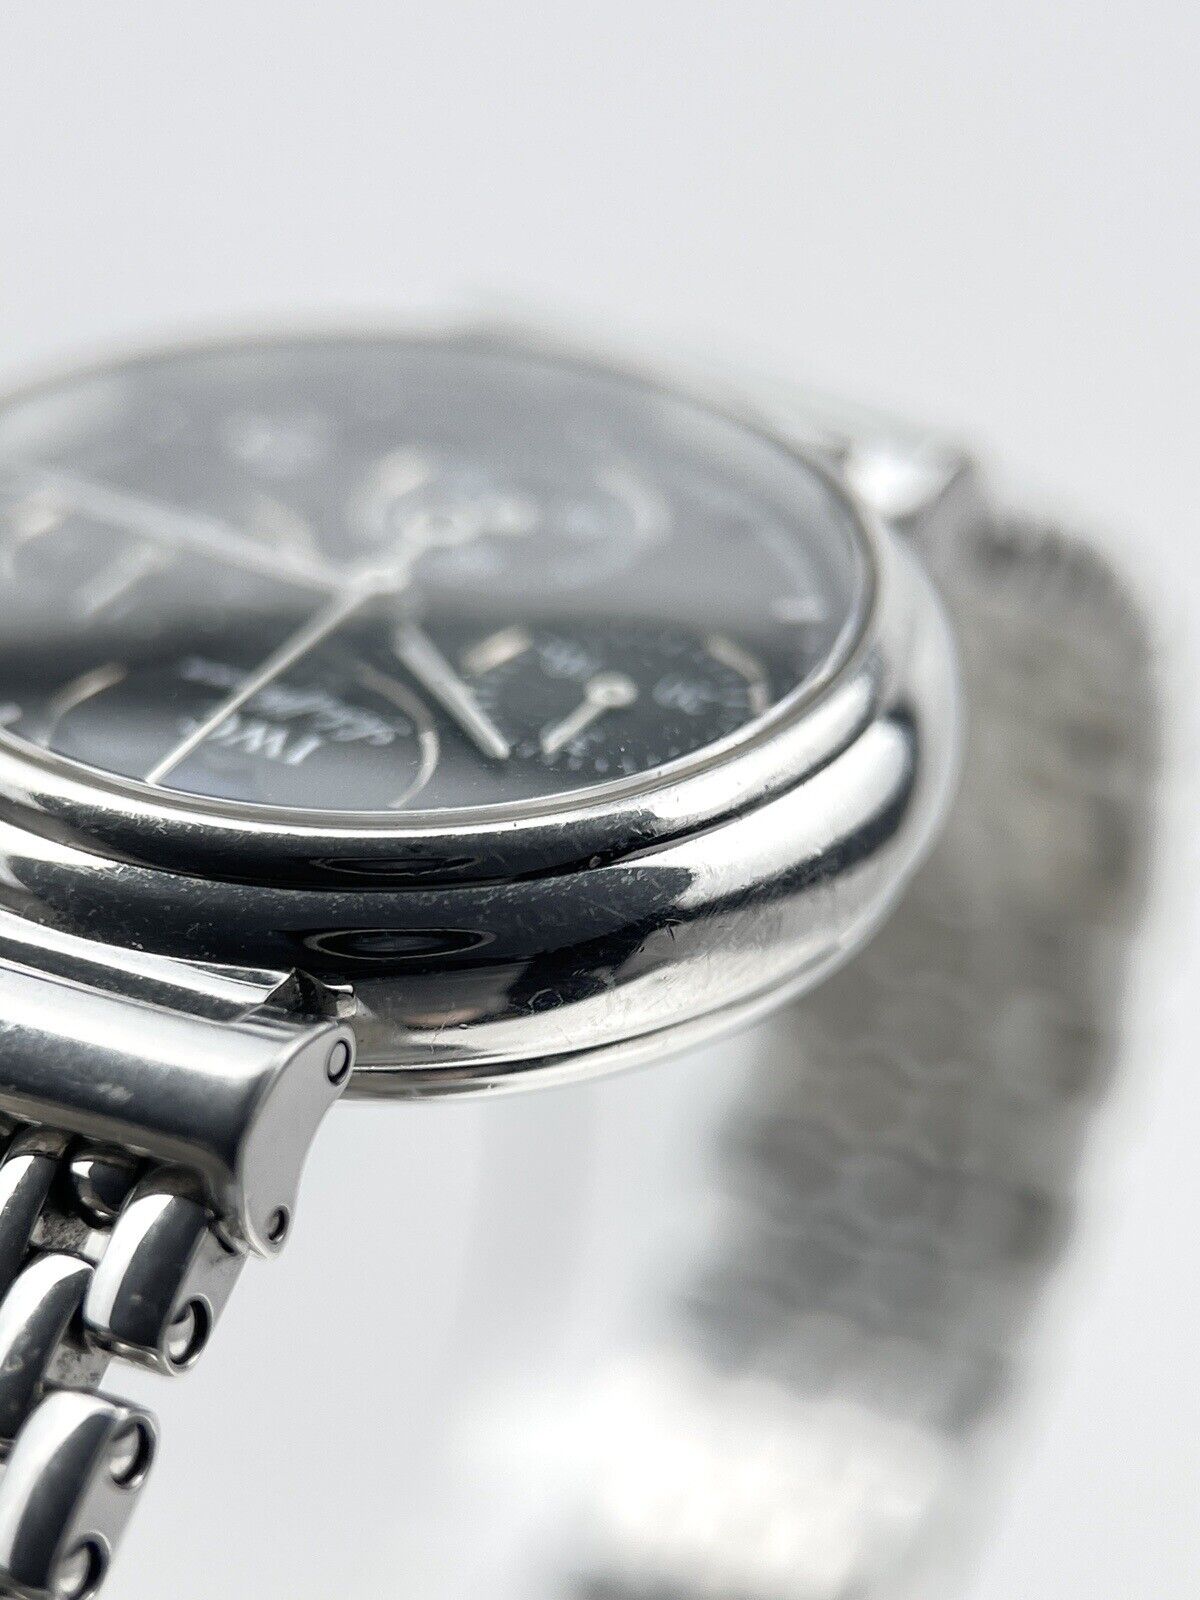 IWC - IW3736-06 Kleine Da Vinci Stainless Steel Ladies Quartz Watch